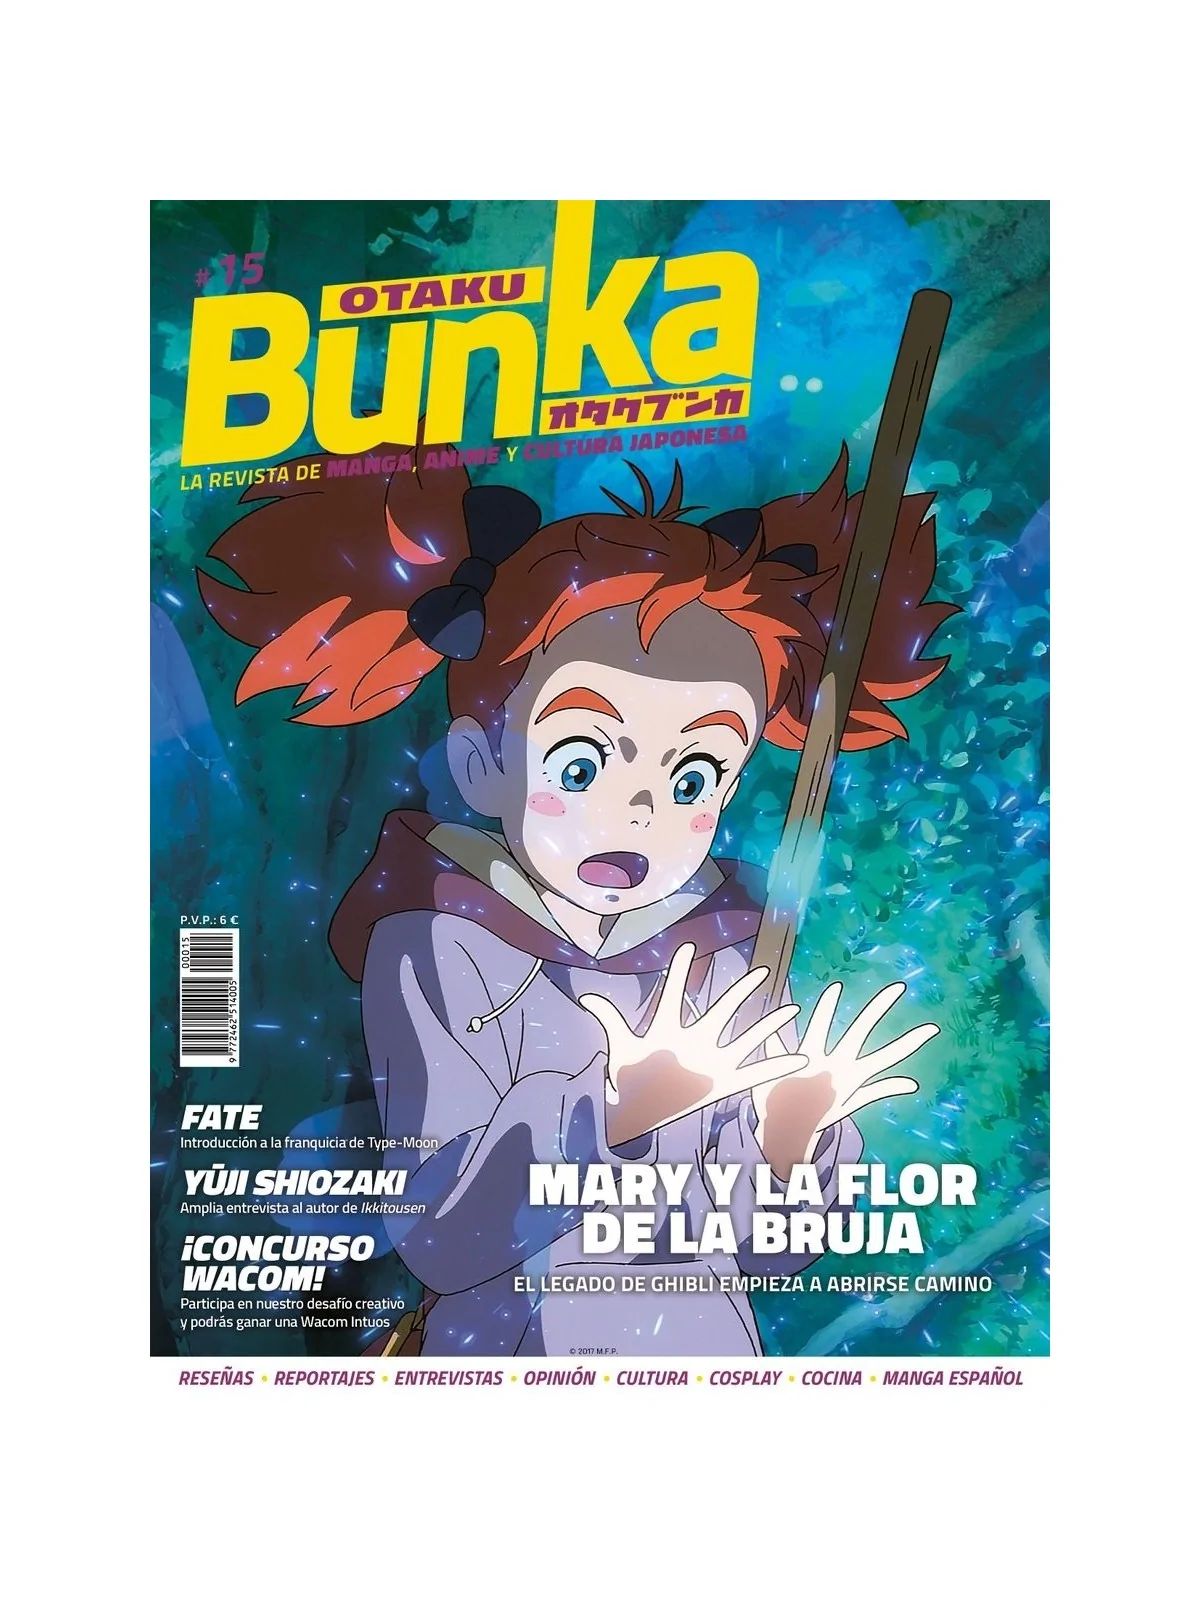 Comprar Otaku Bunka 15 barato al mejor precio 5,70 € de Panini Comics